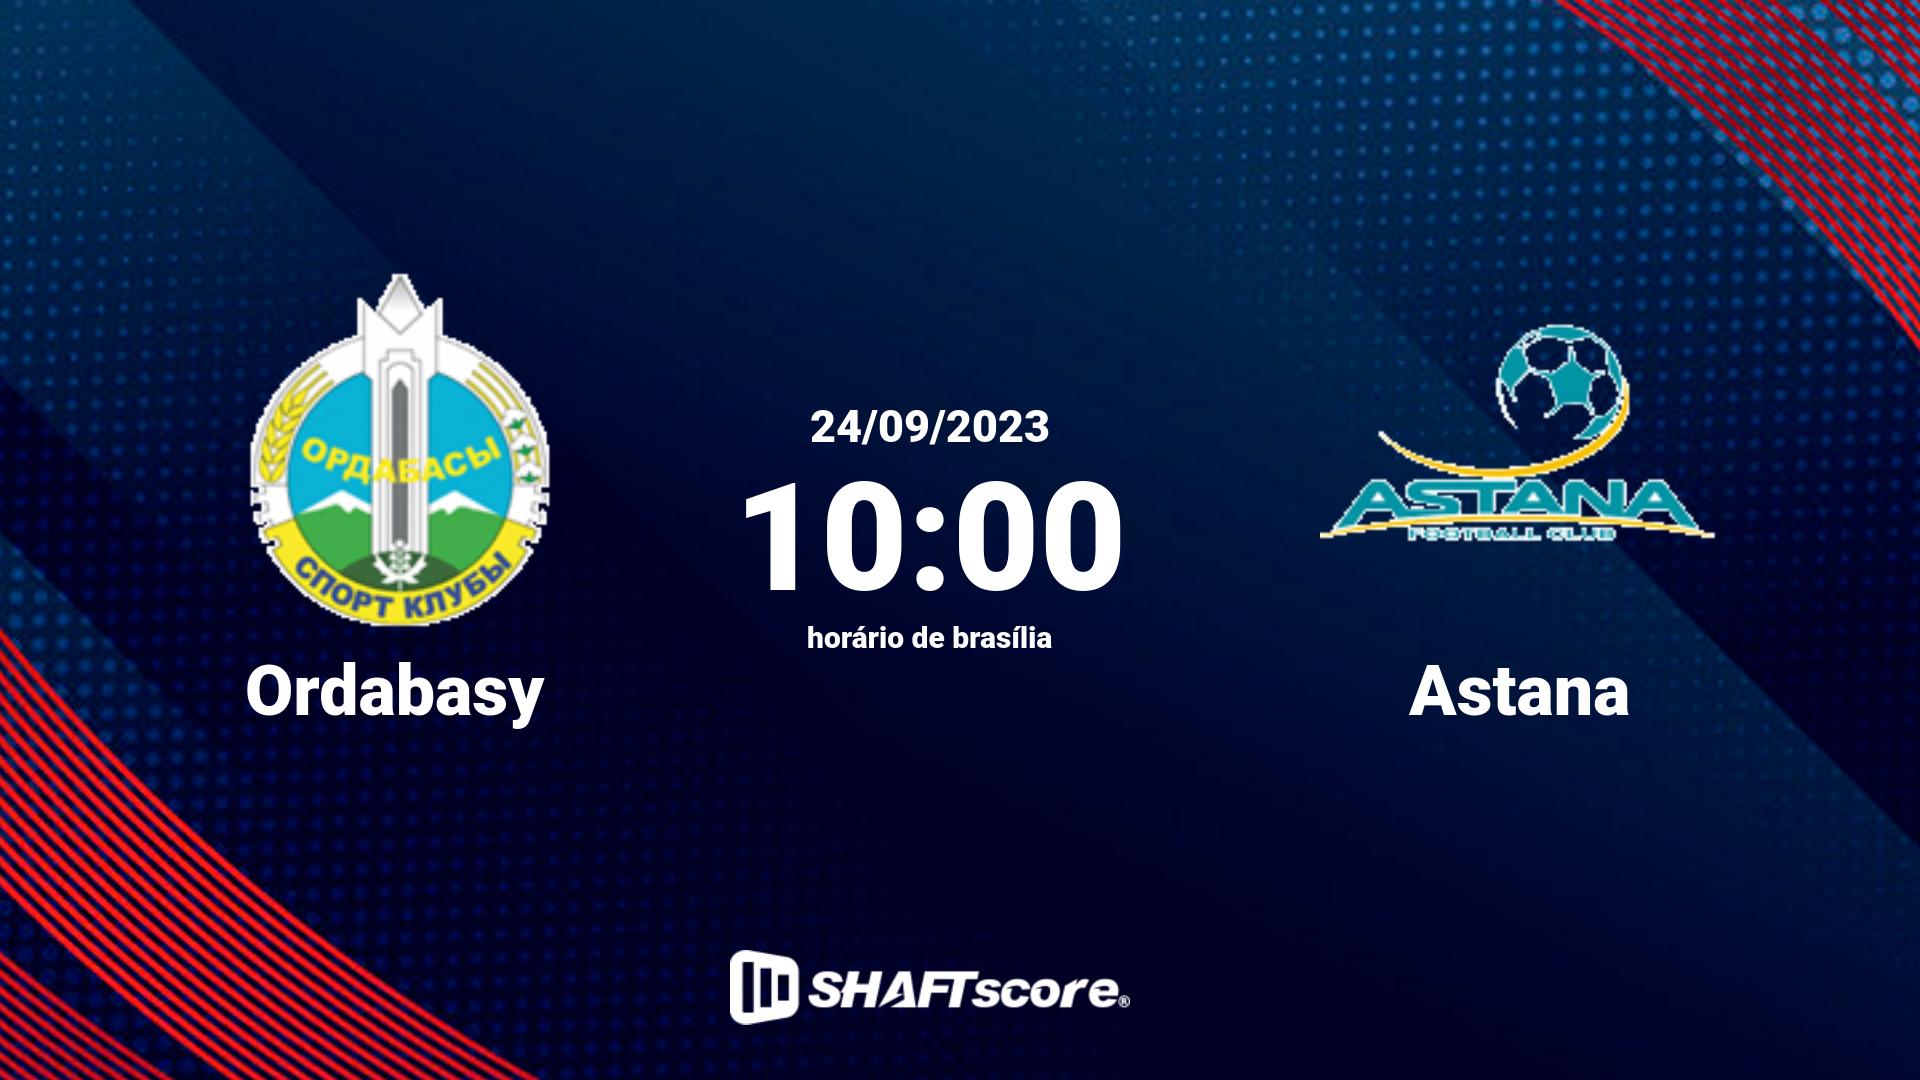 Estatísticas do jogo Ordabasy vs Astana 24.09 10:00